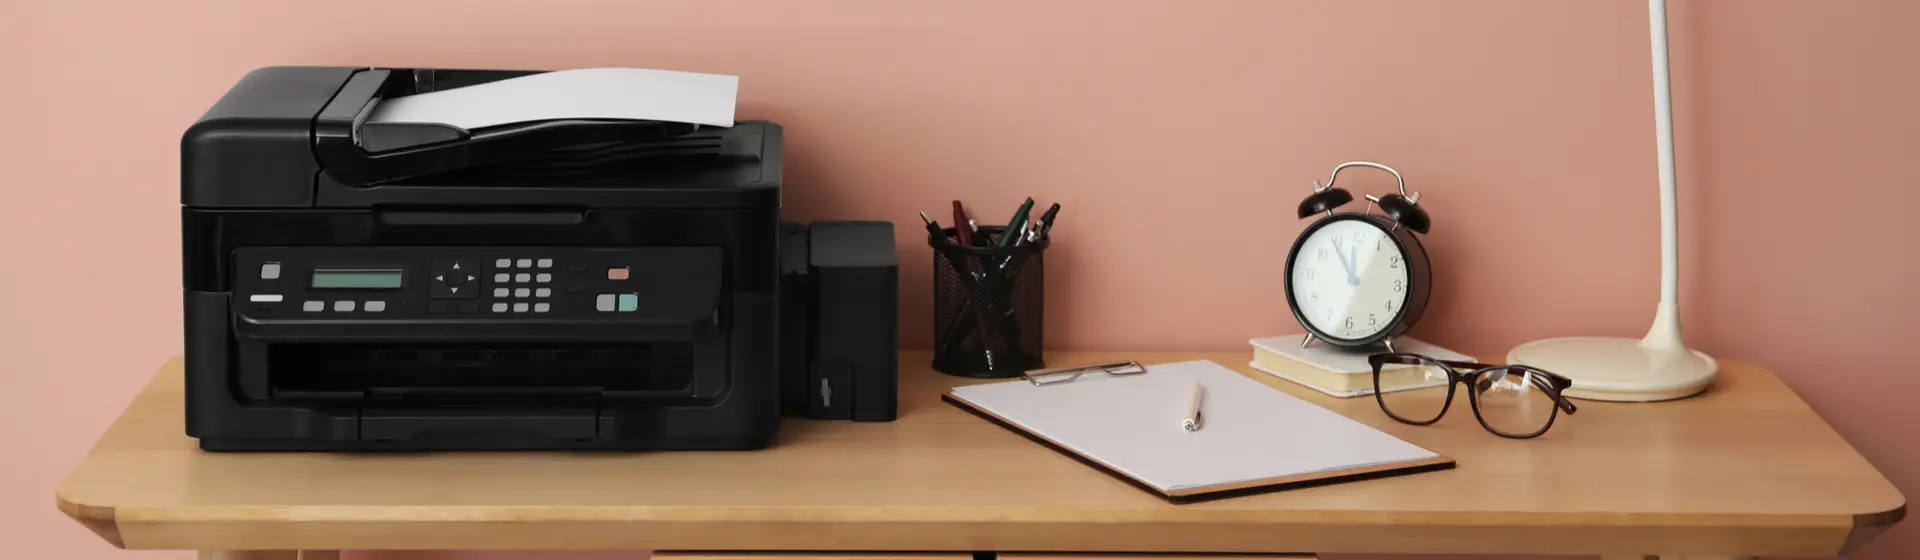 Uma impressora jato de tinta em uma mesa de home office